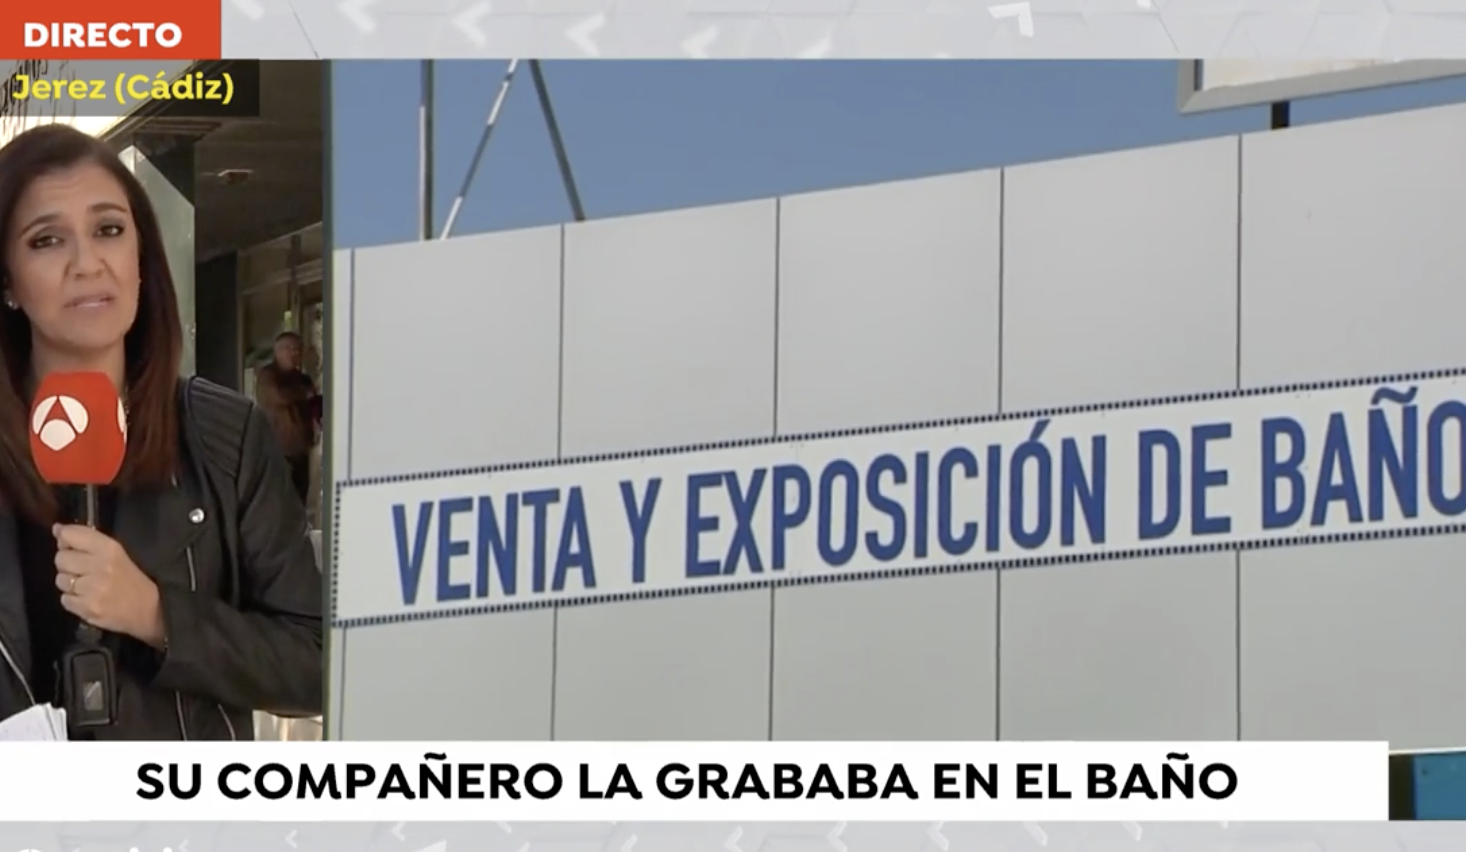 Captura de Antena 3 publicando la noticia de la grabación con cámara oculta a una mujer en Jerez.